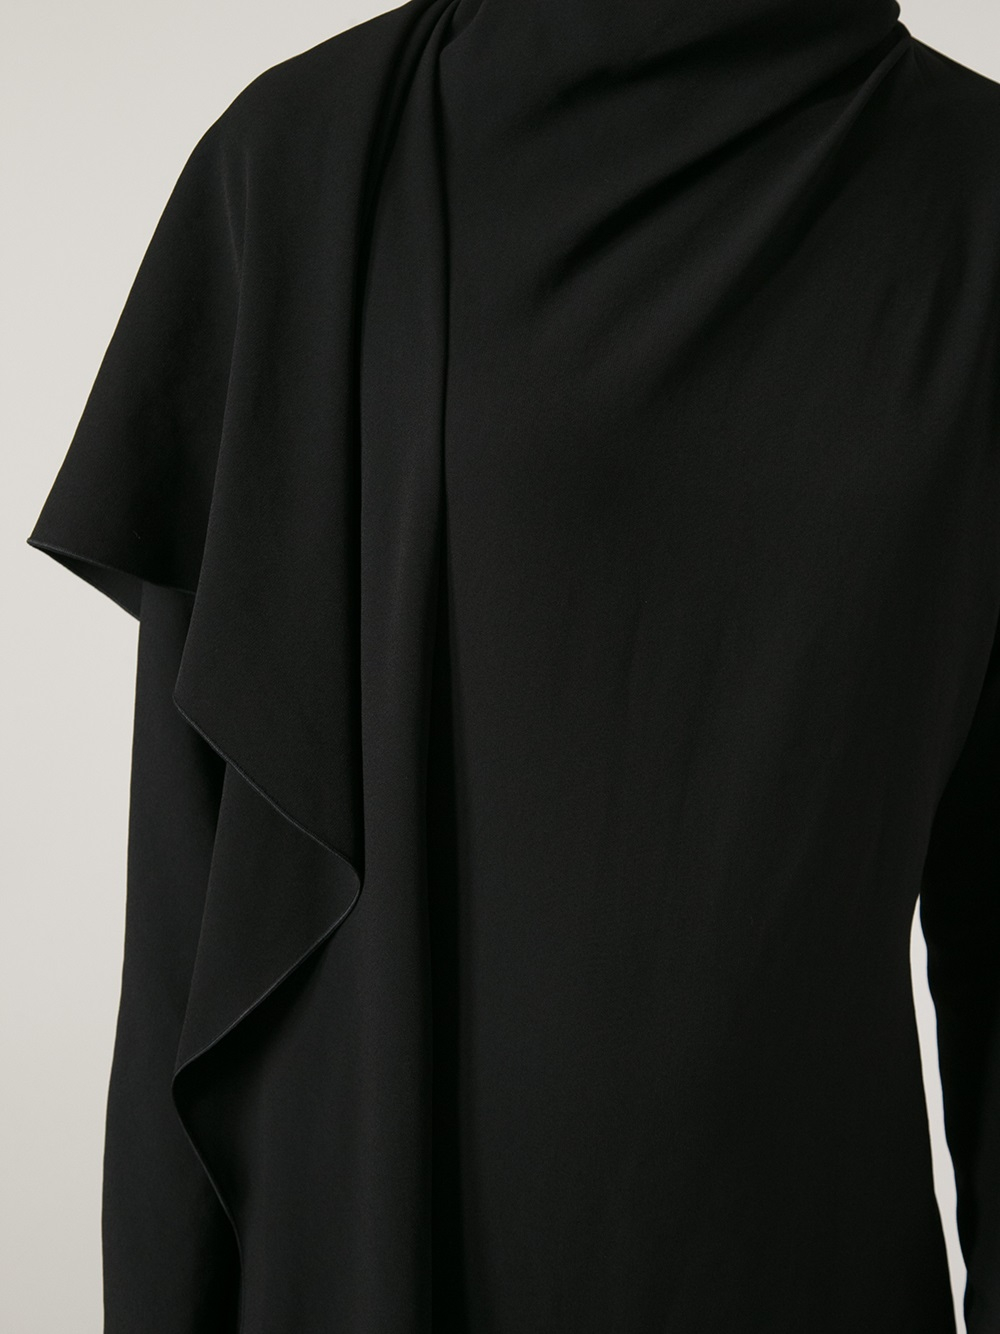 Lyst - Lanvin Long Sleeved Dress in Black